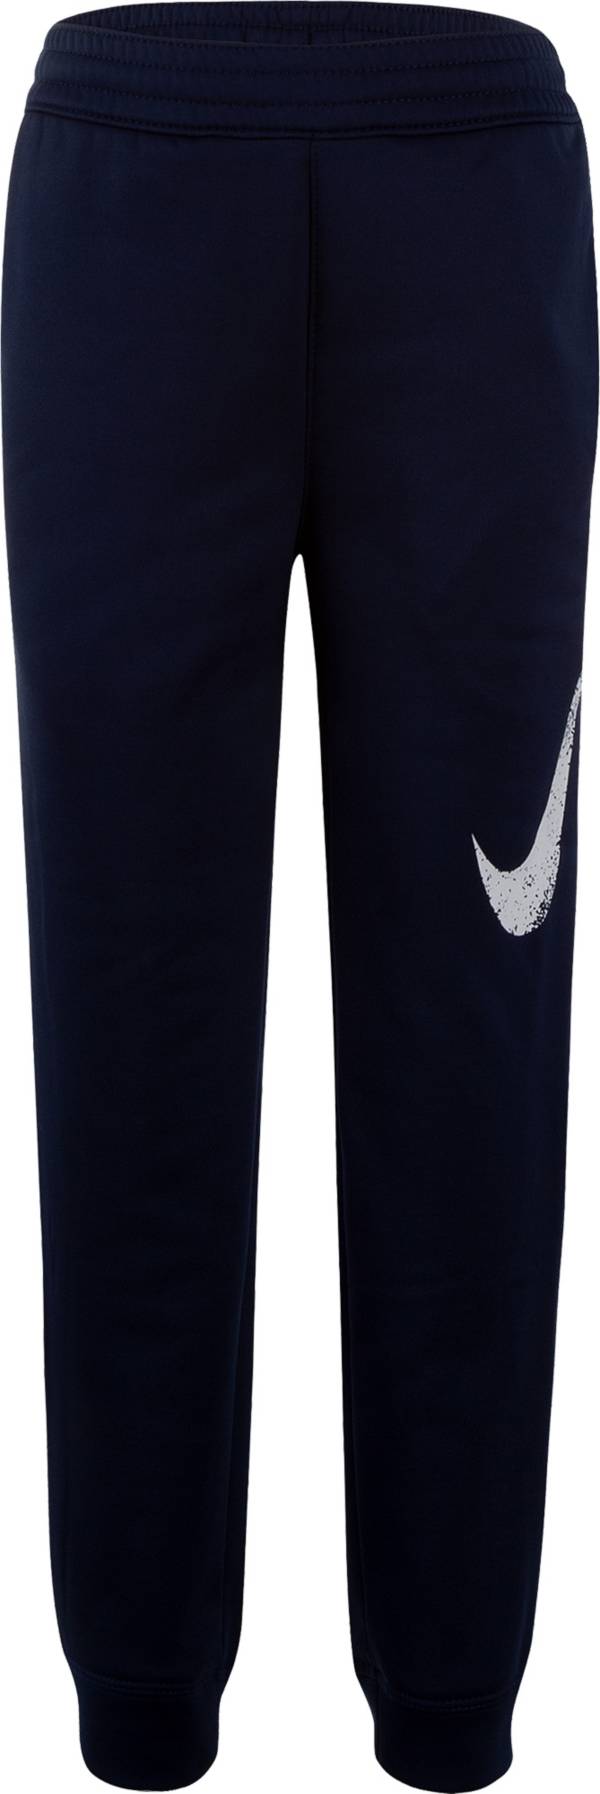 Nike Little Boys' Therma Fleece Basketball Pants product image